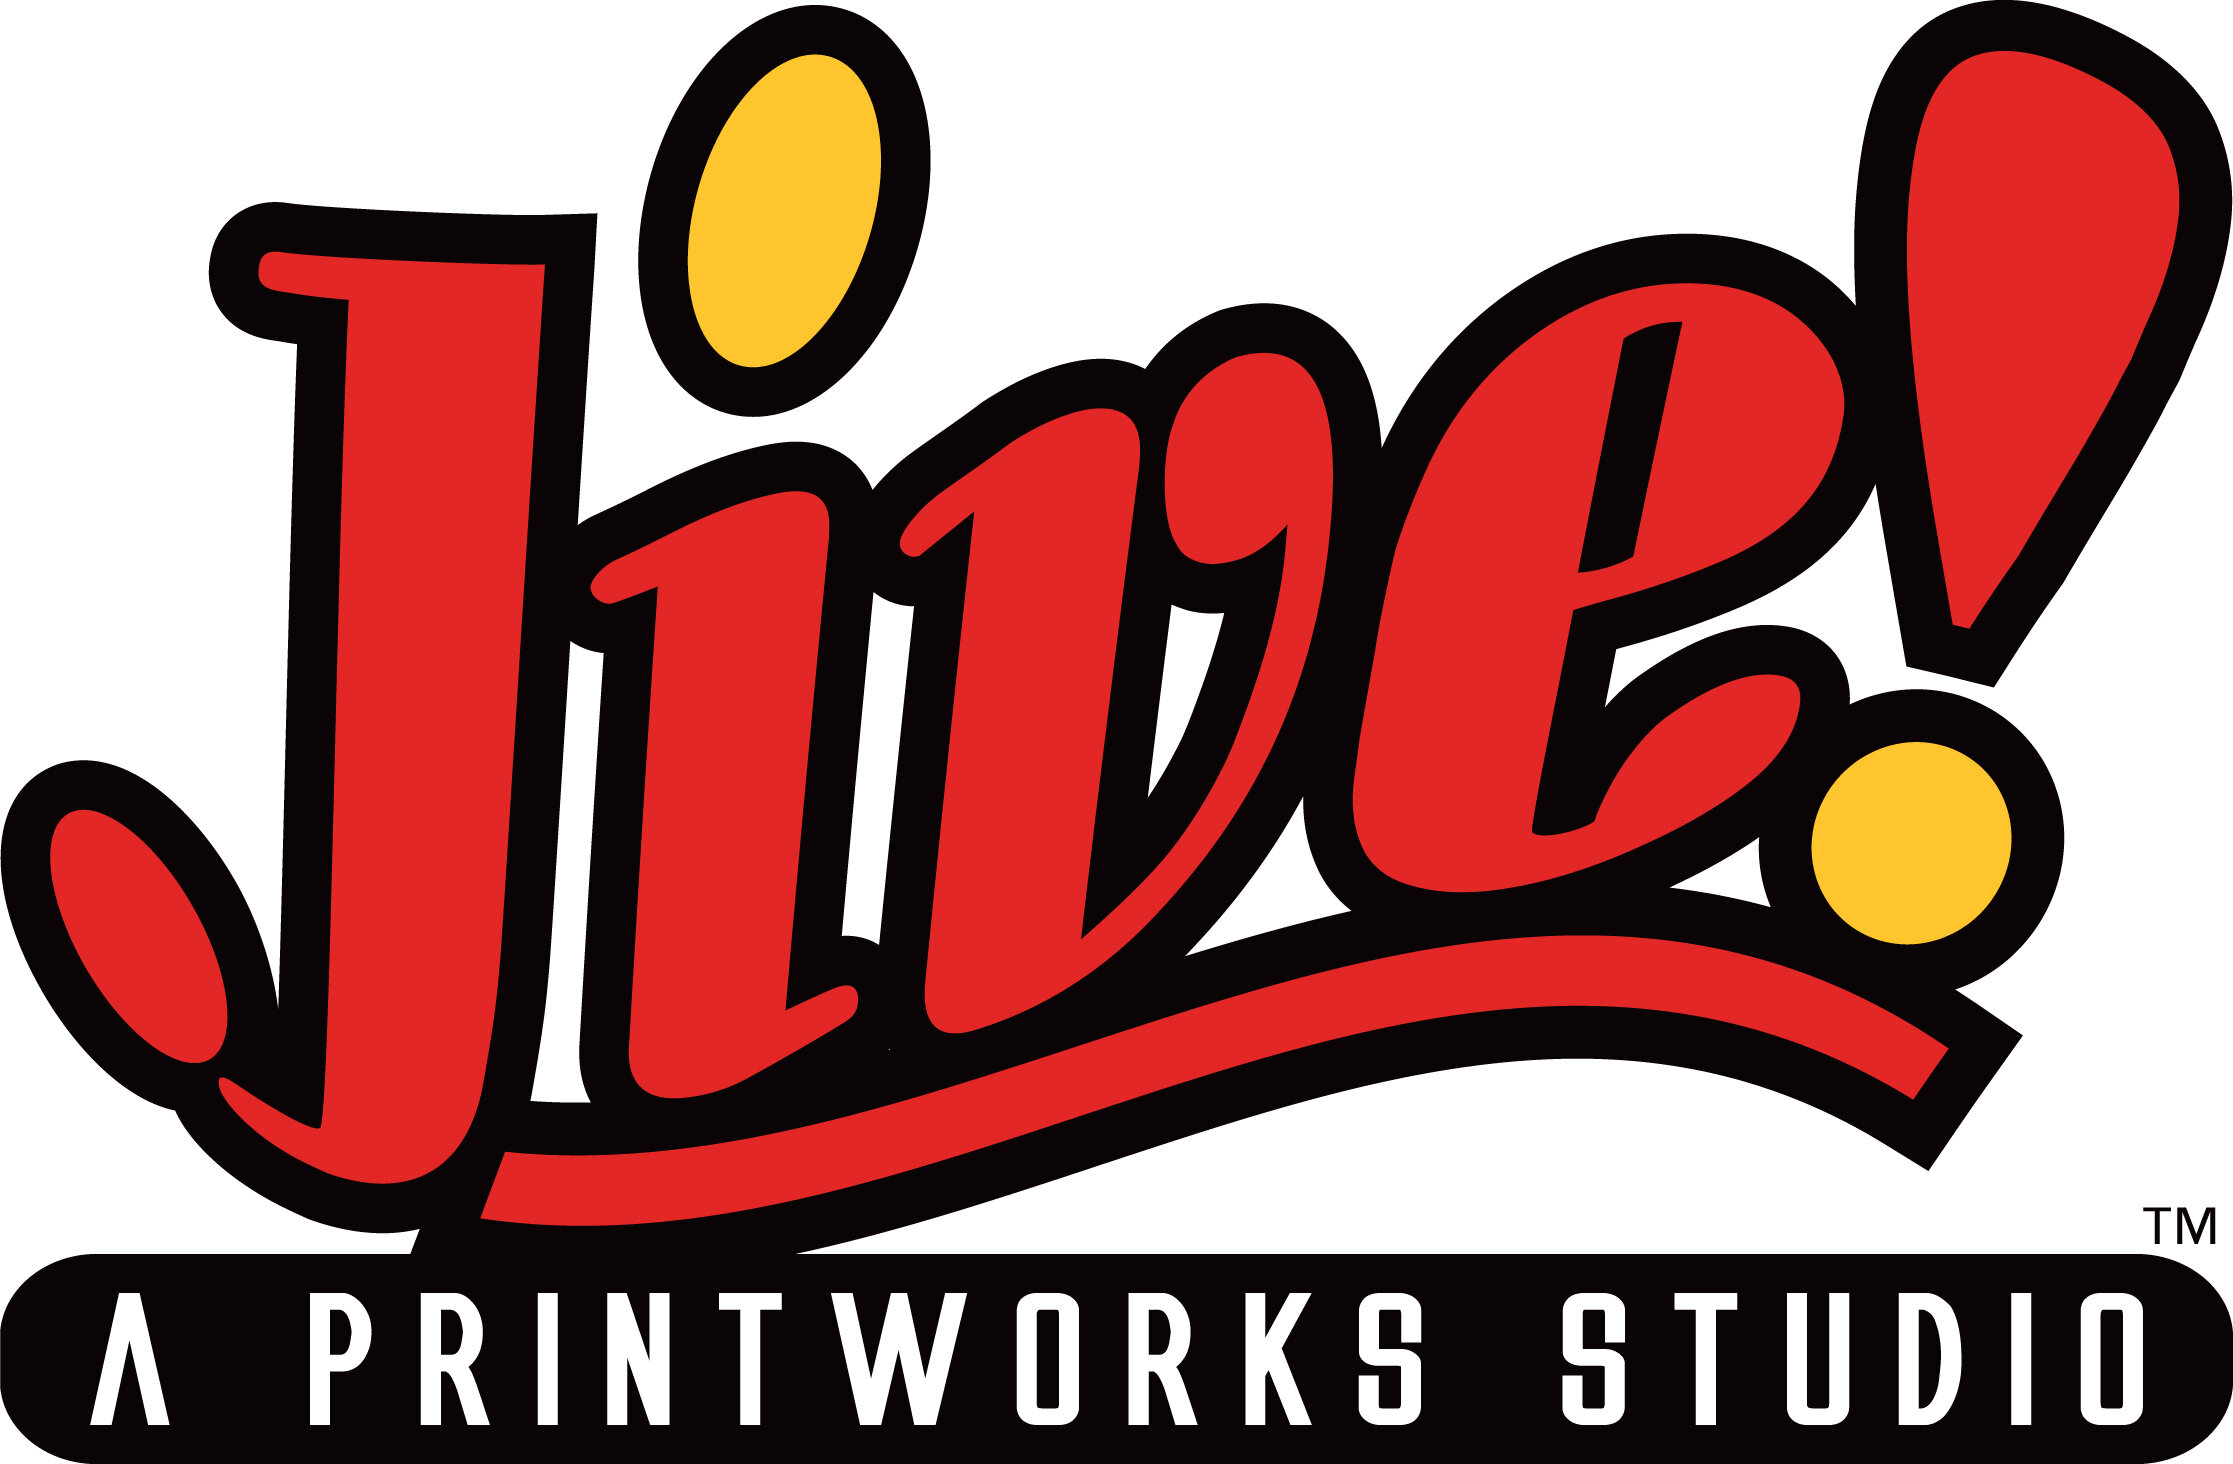 Jive! A Printworks Studio